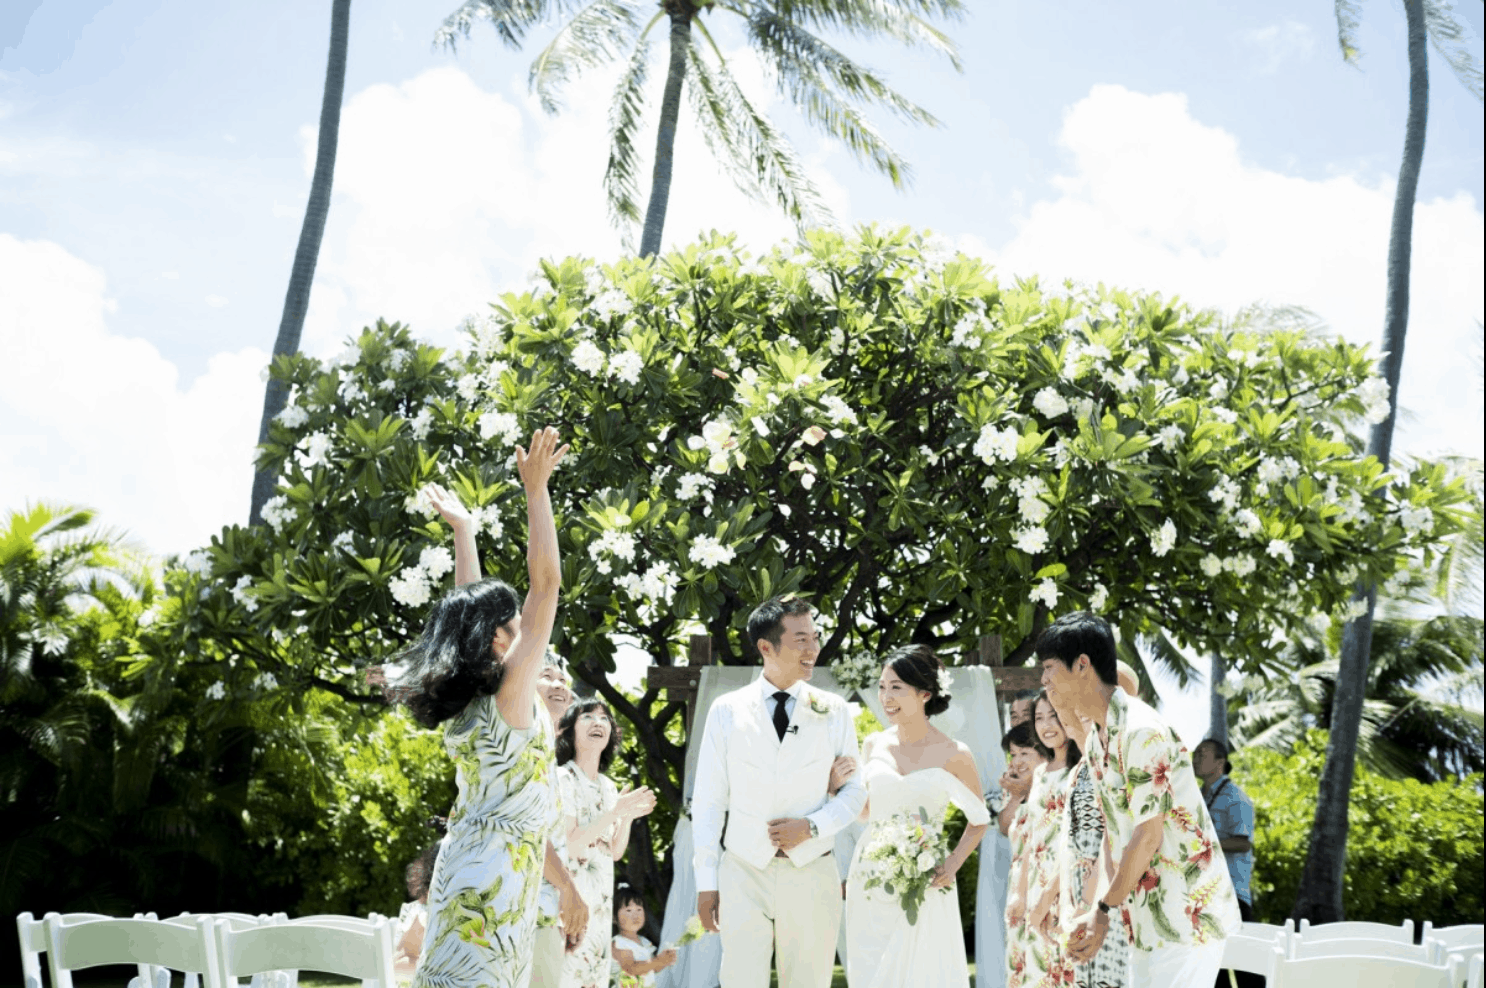 ハワイ結婚式の費用総額はいくら 内訳からゲストの旅費負担まで徹底解説 ウェディングニュース